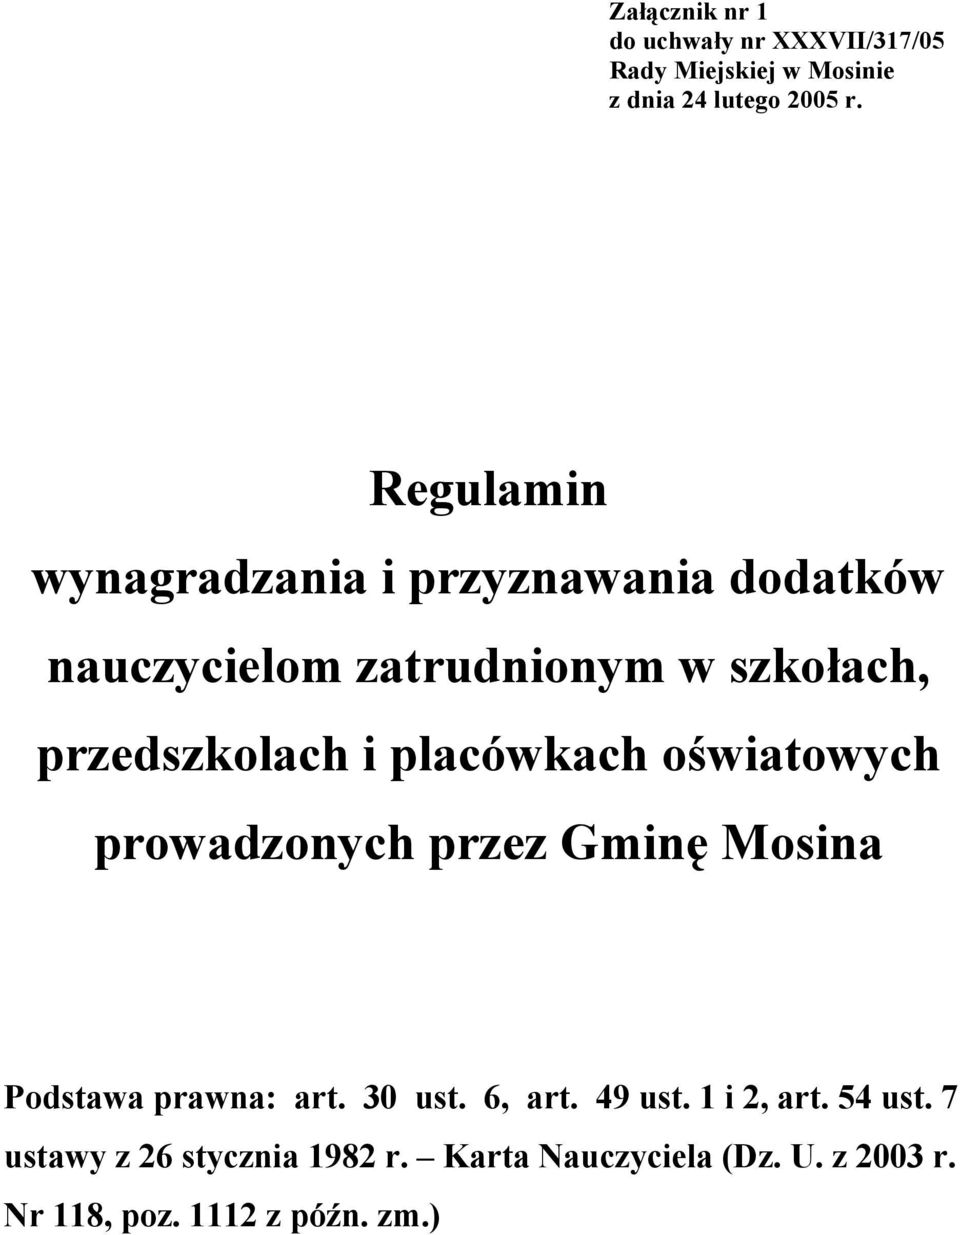 placówkach oświatowych prowadzonych przez Gminę Mosina Podstawa prawna: art. 30 ust. 6, art. 49 ust.